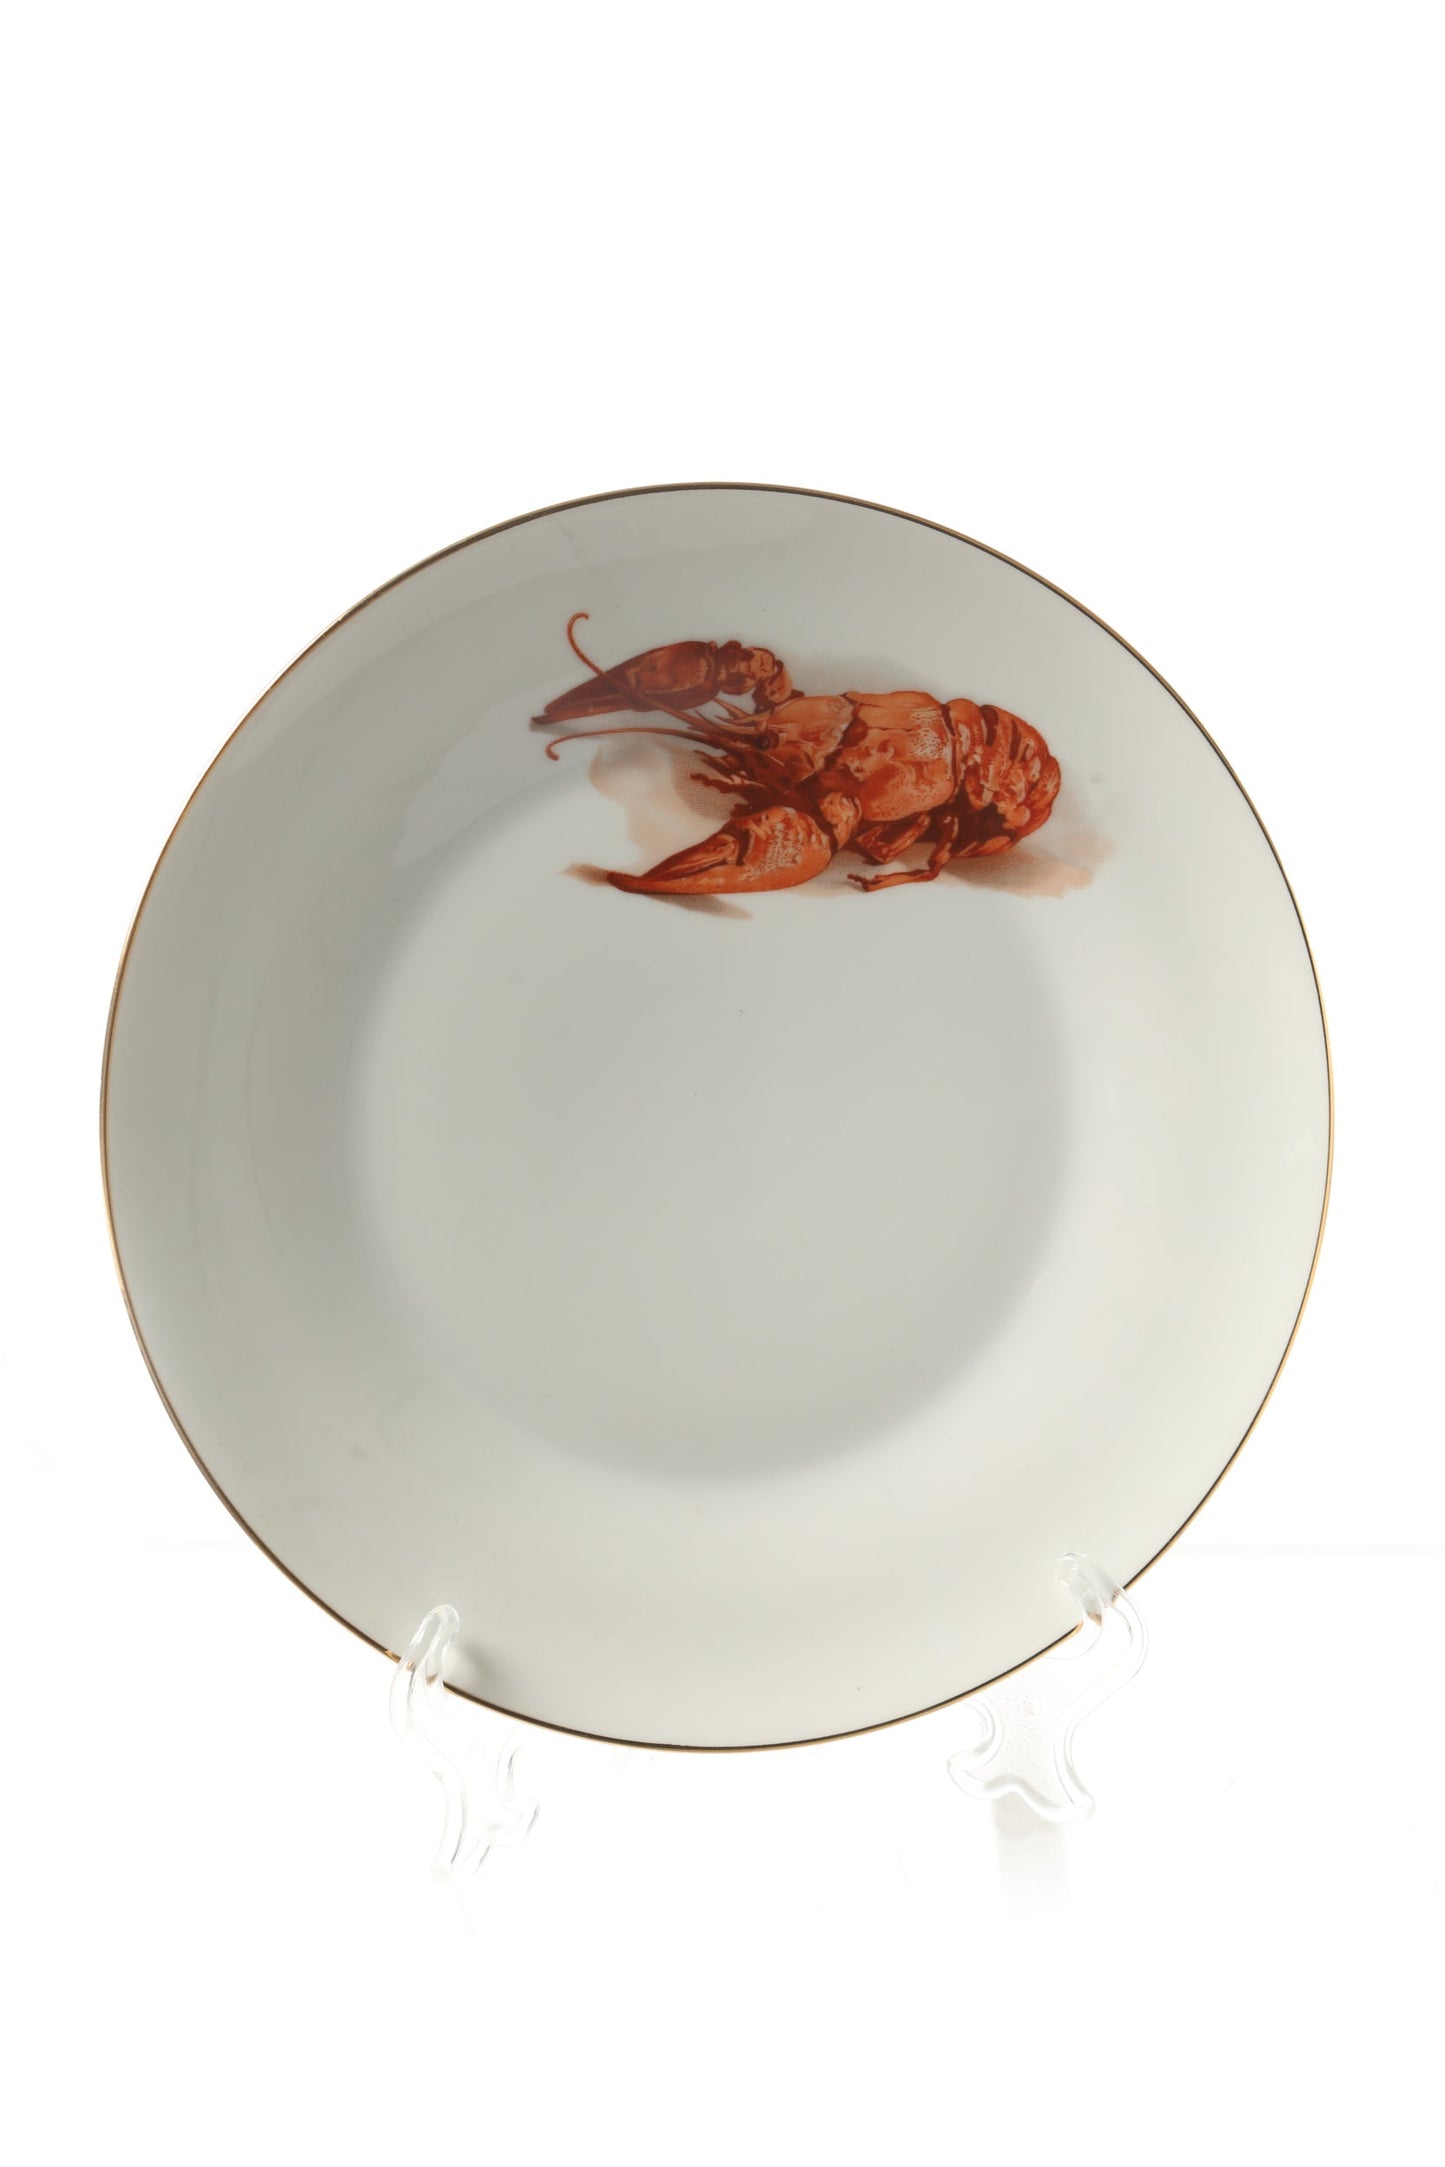 Servizio piatti porcellana da pesce aragosta anni 80